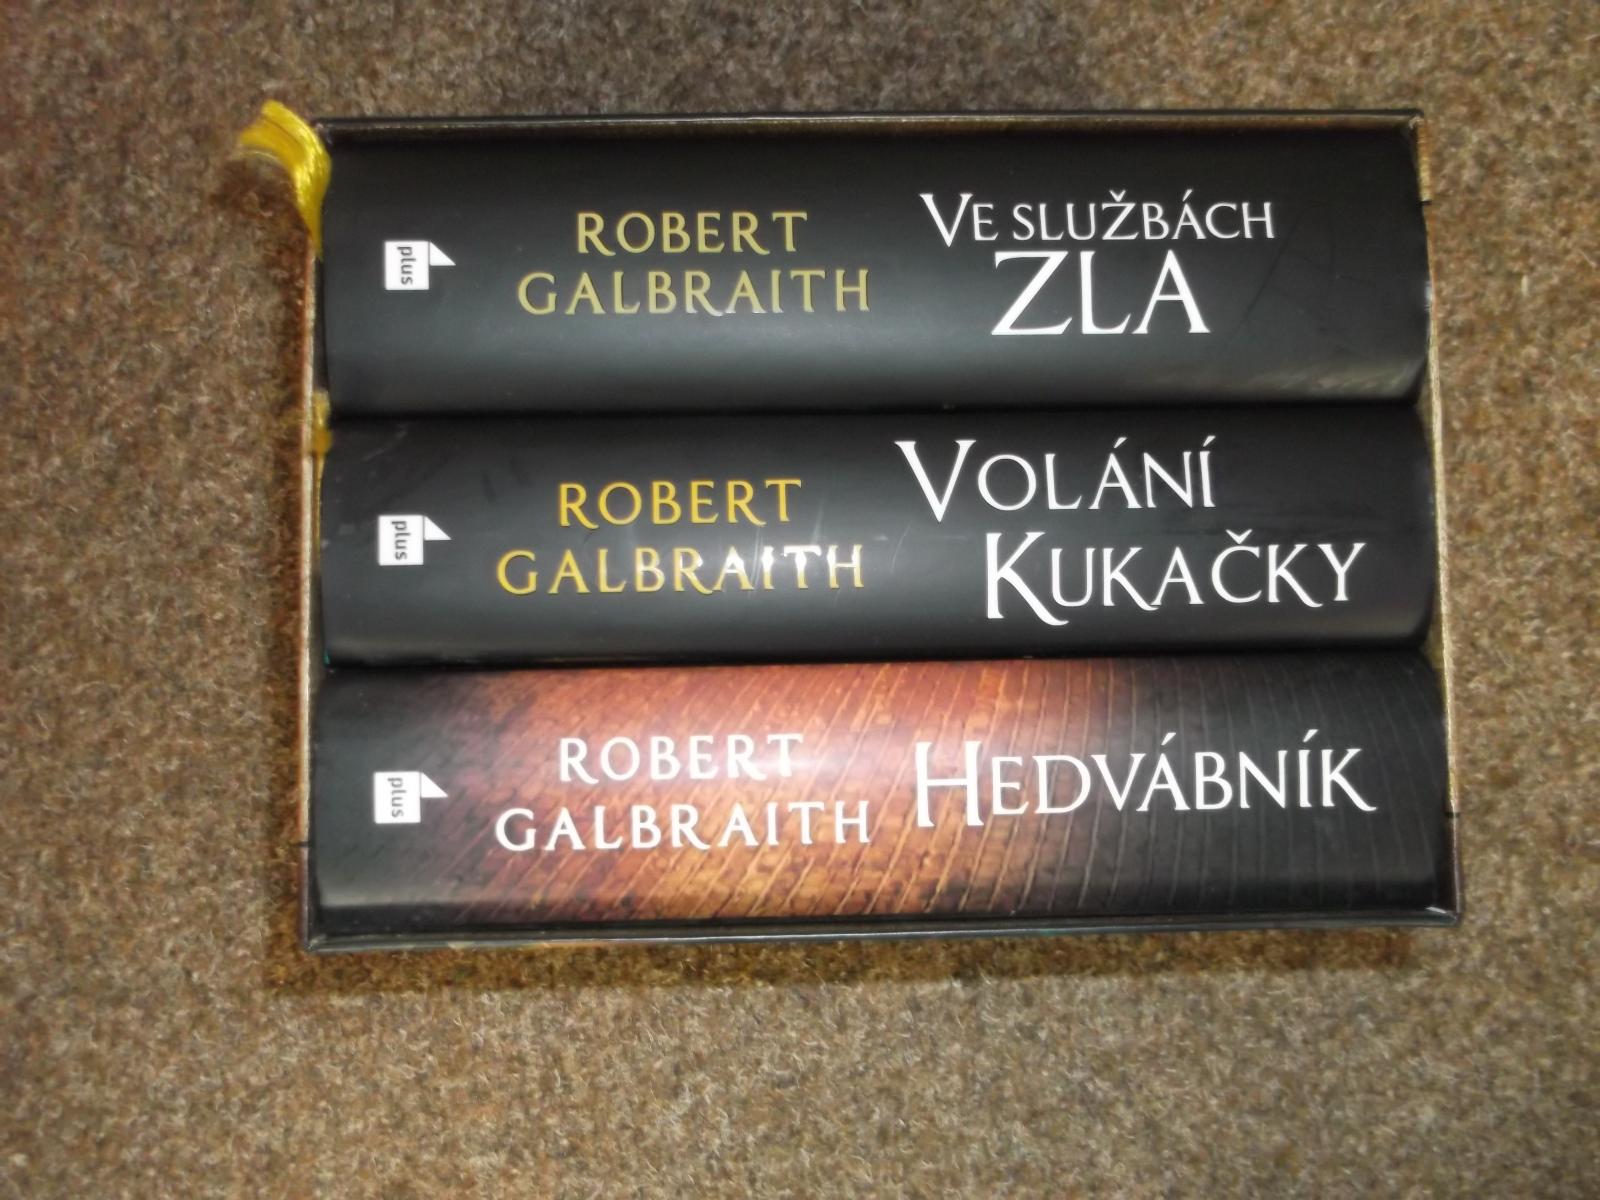 Robert Galbraith V službách zla - Knihy a časopisy